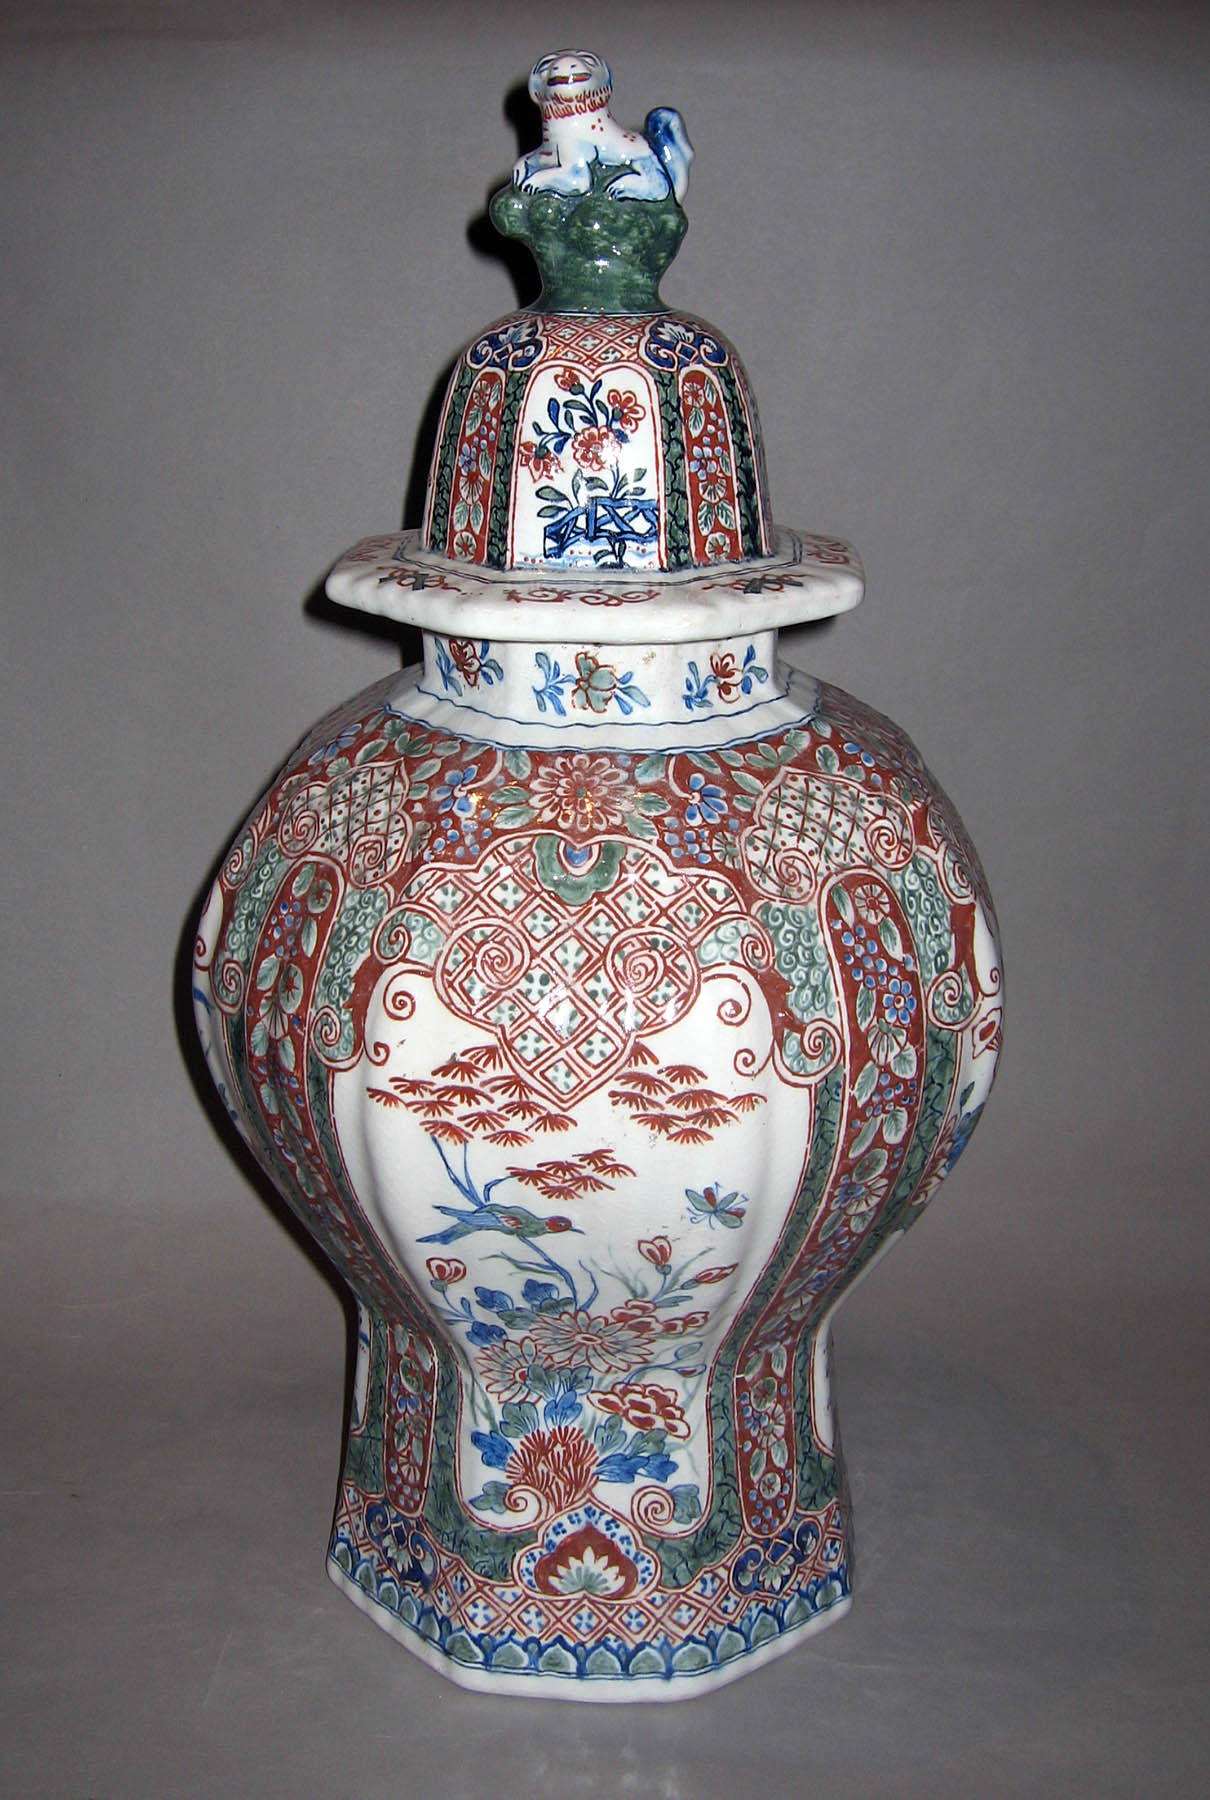 1982.0117.002 A, B Earthenware vase